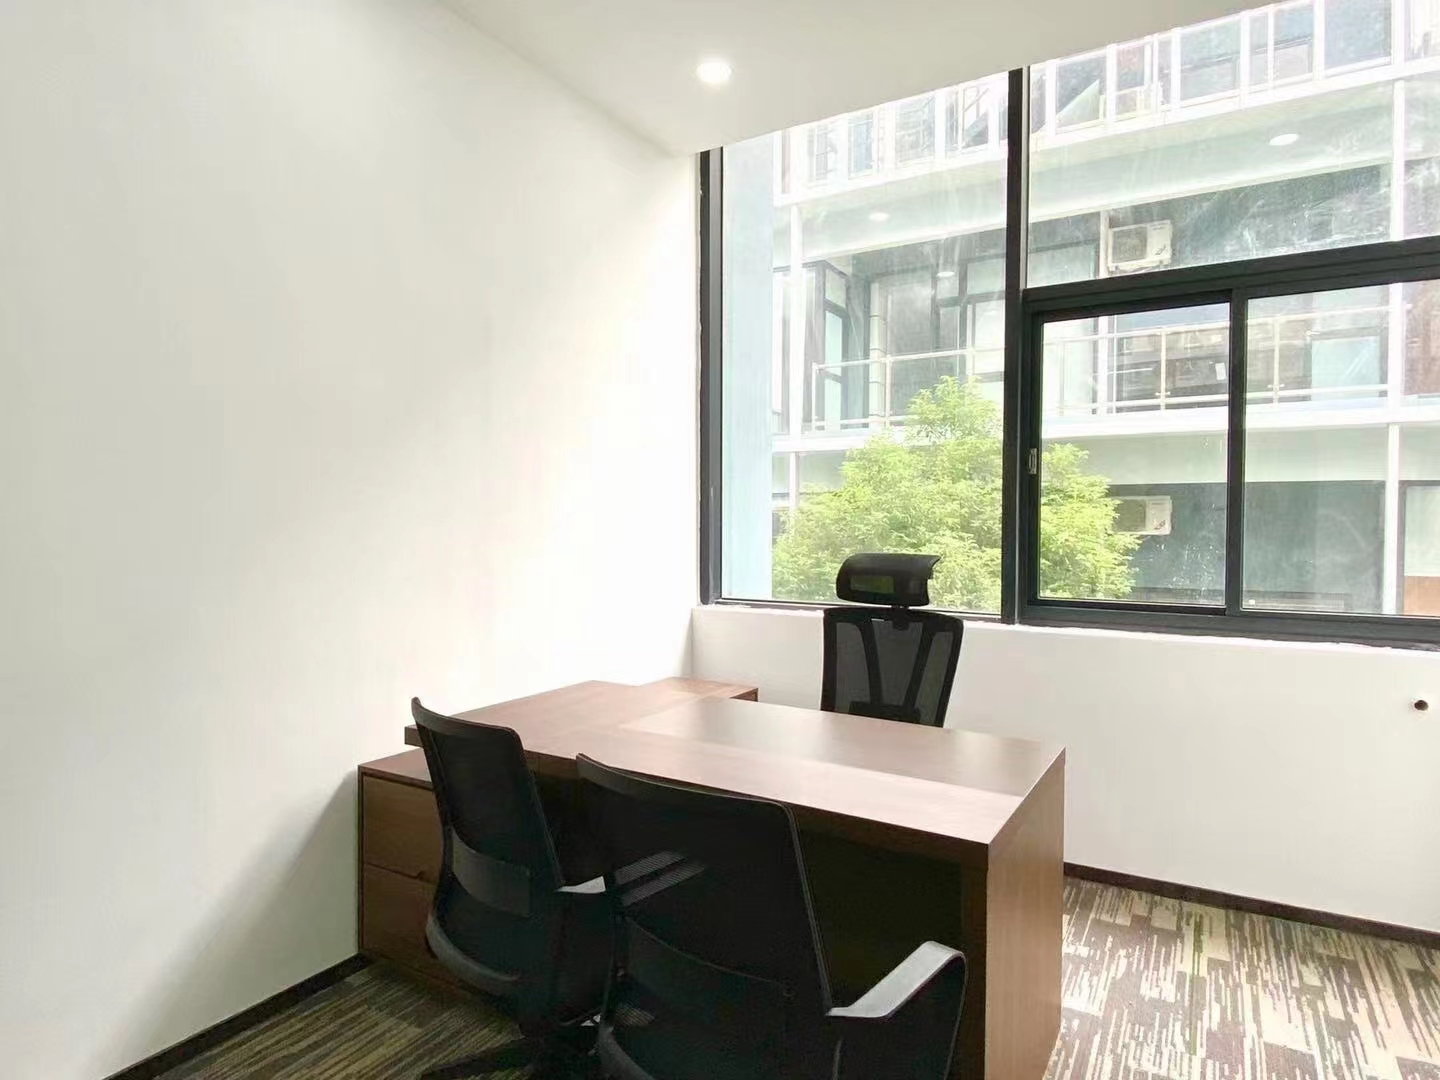 海珠区创意园新出创意园精装修办公室216平方带家具